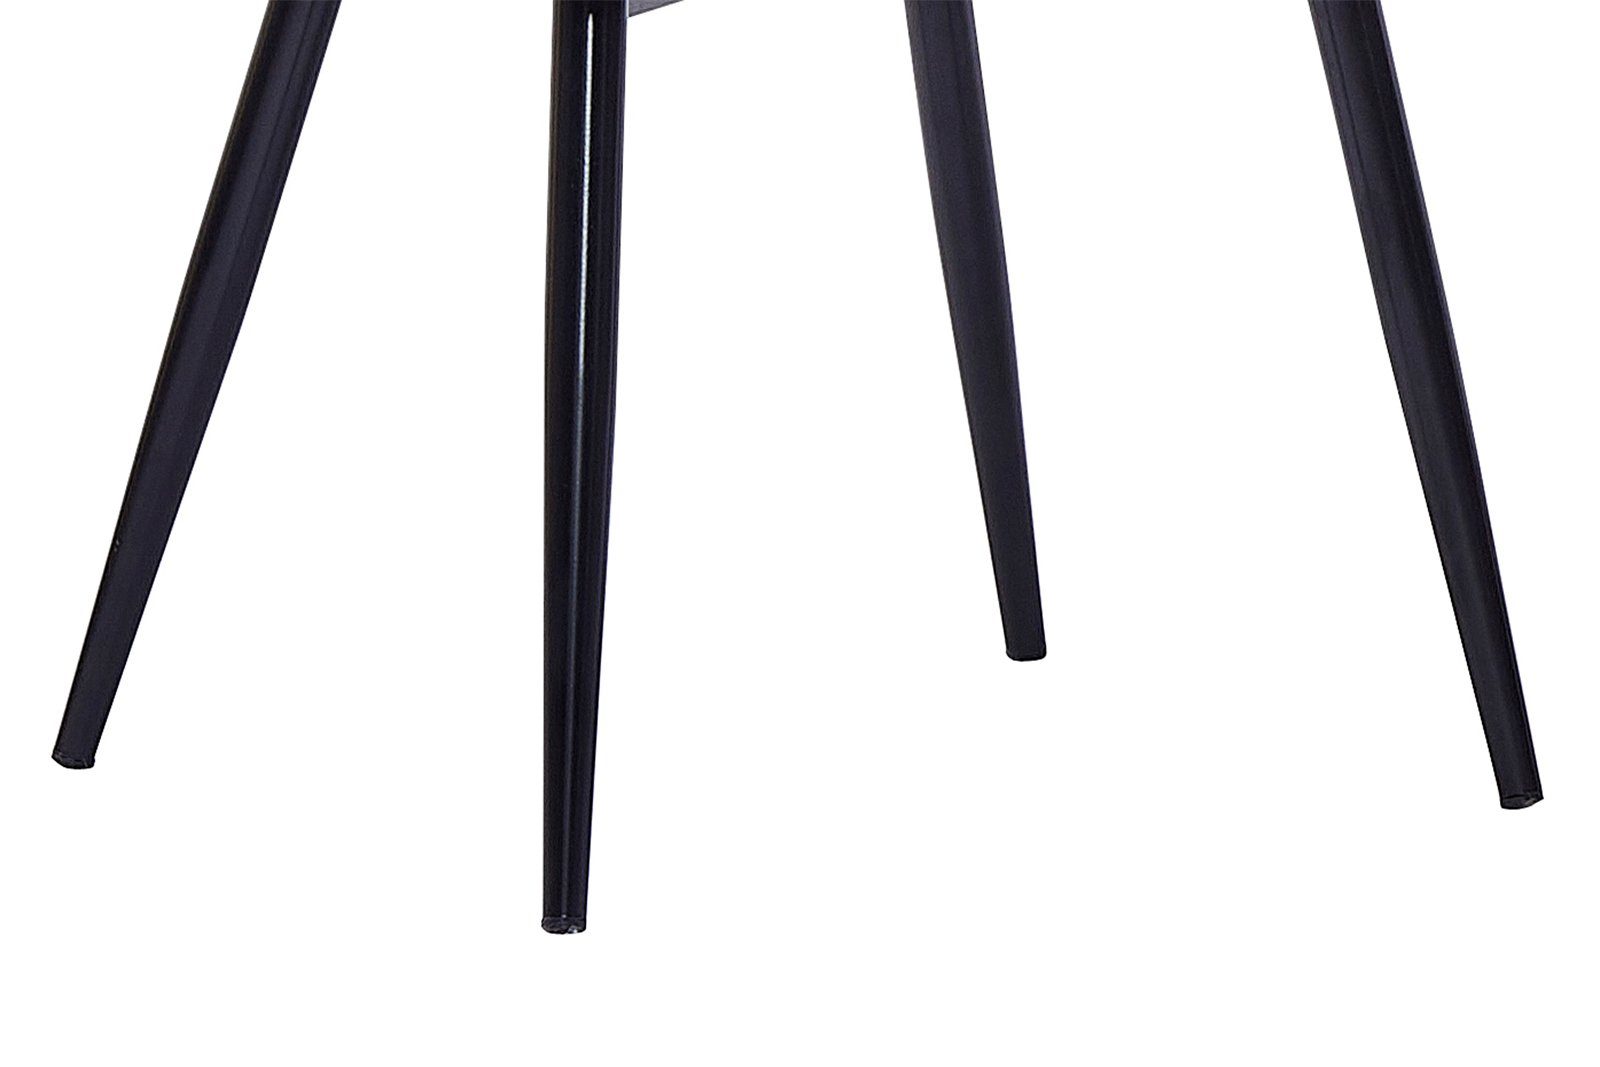 mit Junado® 43cm Esszimmerstuhl schwarz Lasse, skandinavischer Sitzschale, Stil ergonomischer Sitzhöhe